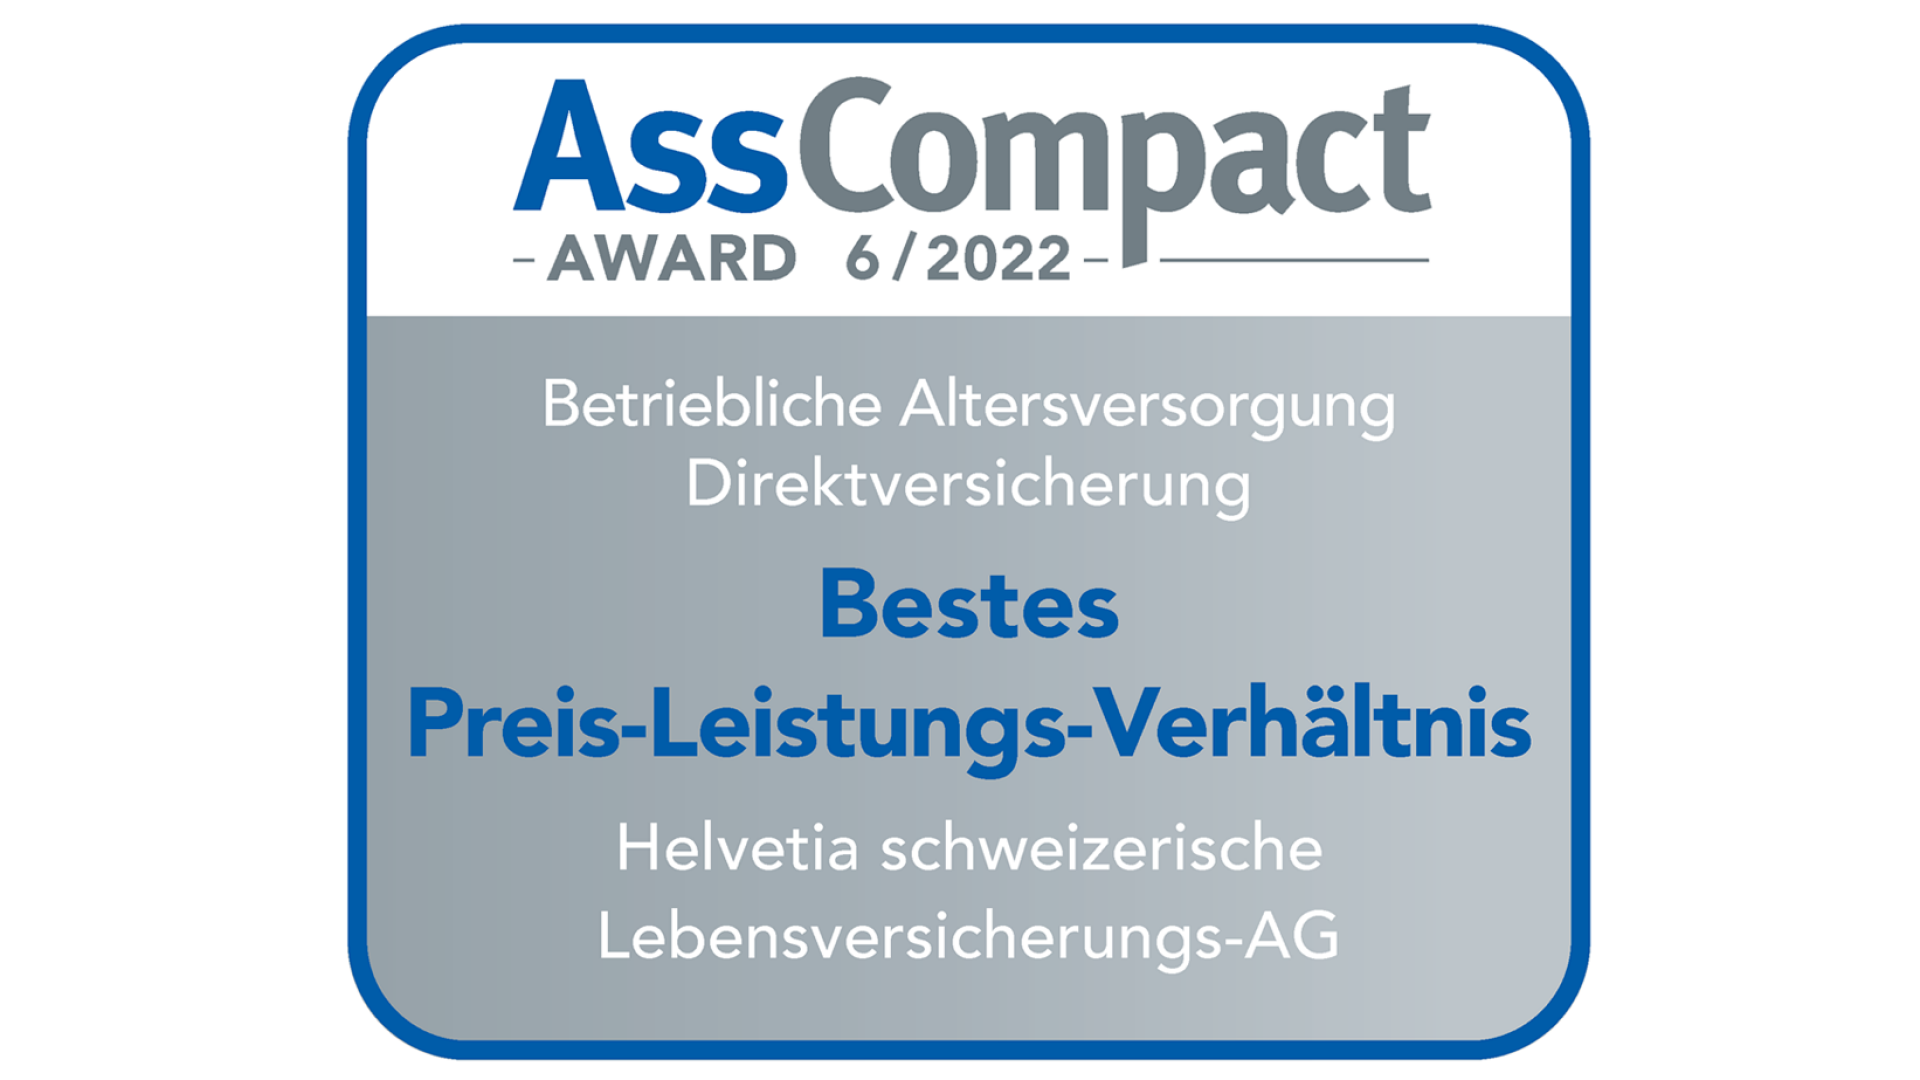 AssCompact-Siegel bestätigt "Bestes Preis-Leistungs-Verhältnis" für die Betriebliche Altersvorsorge.